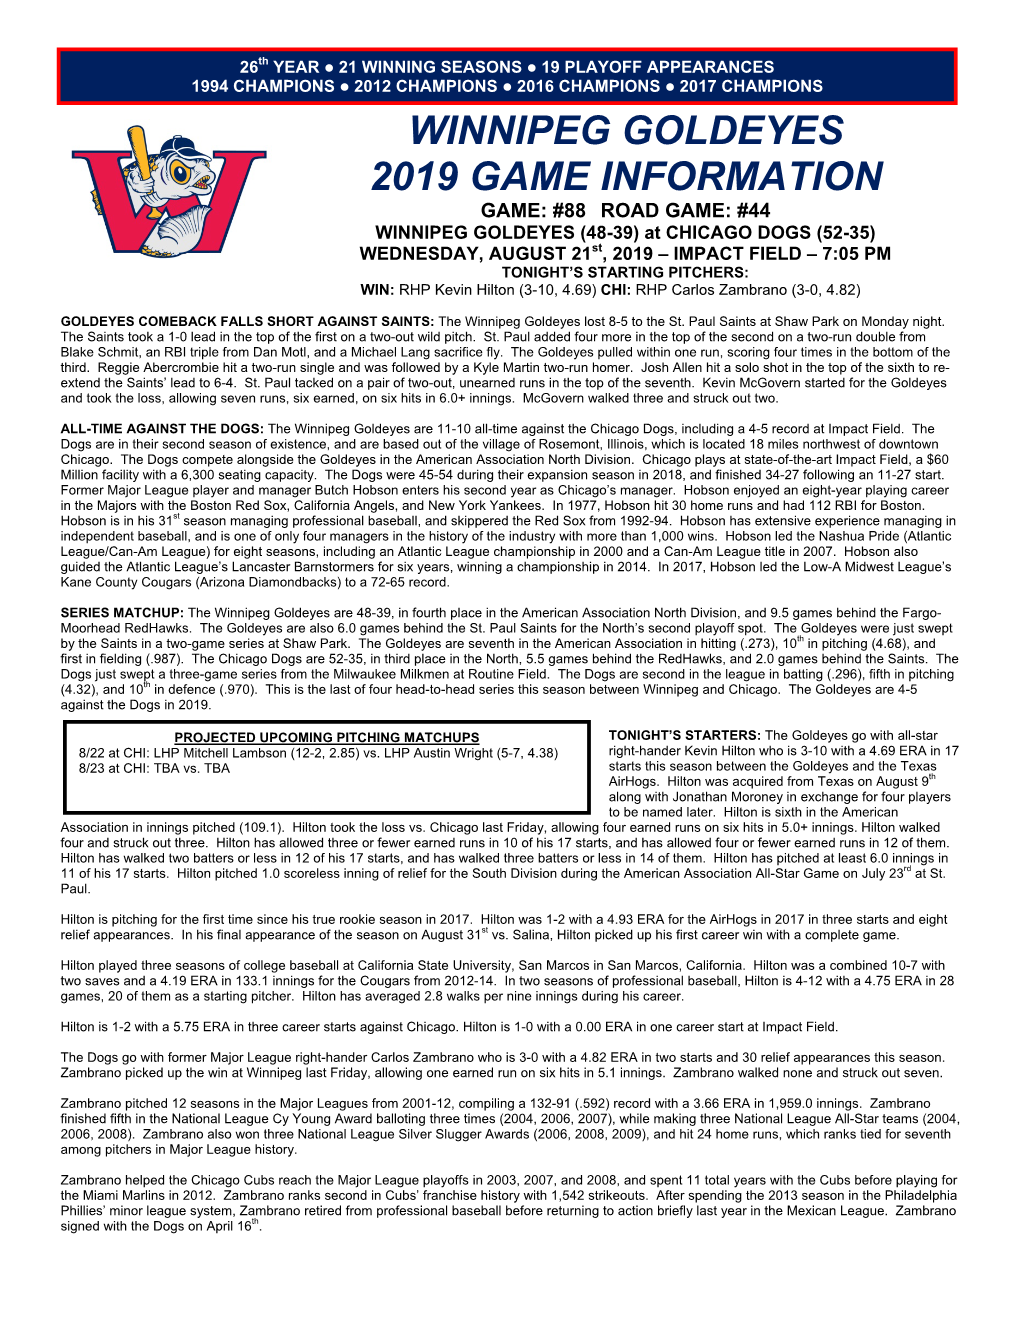 Winnipeg Goldeyes 2019 Game Information